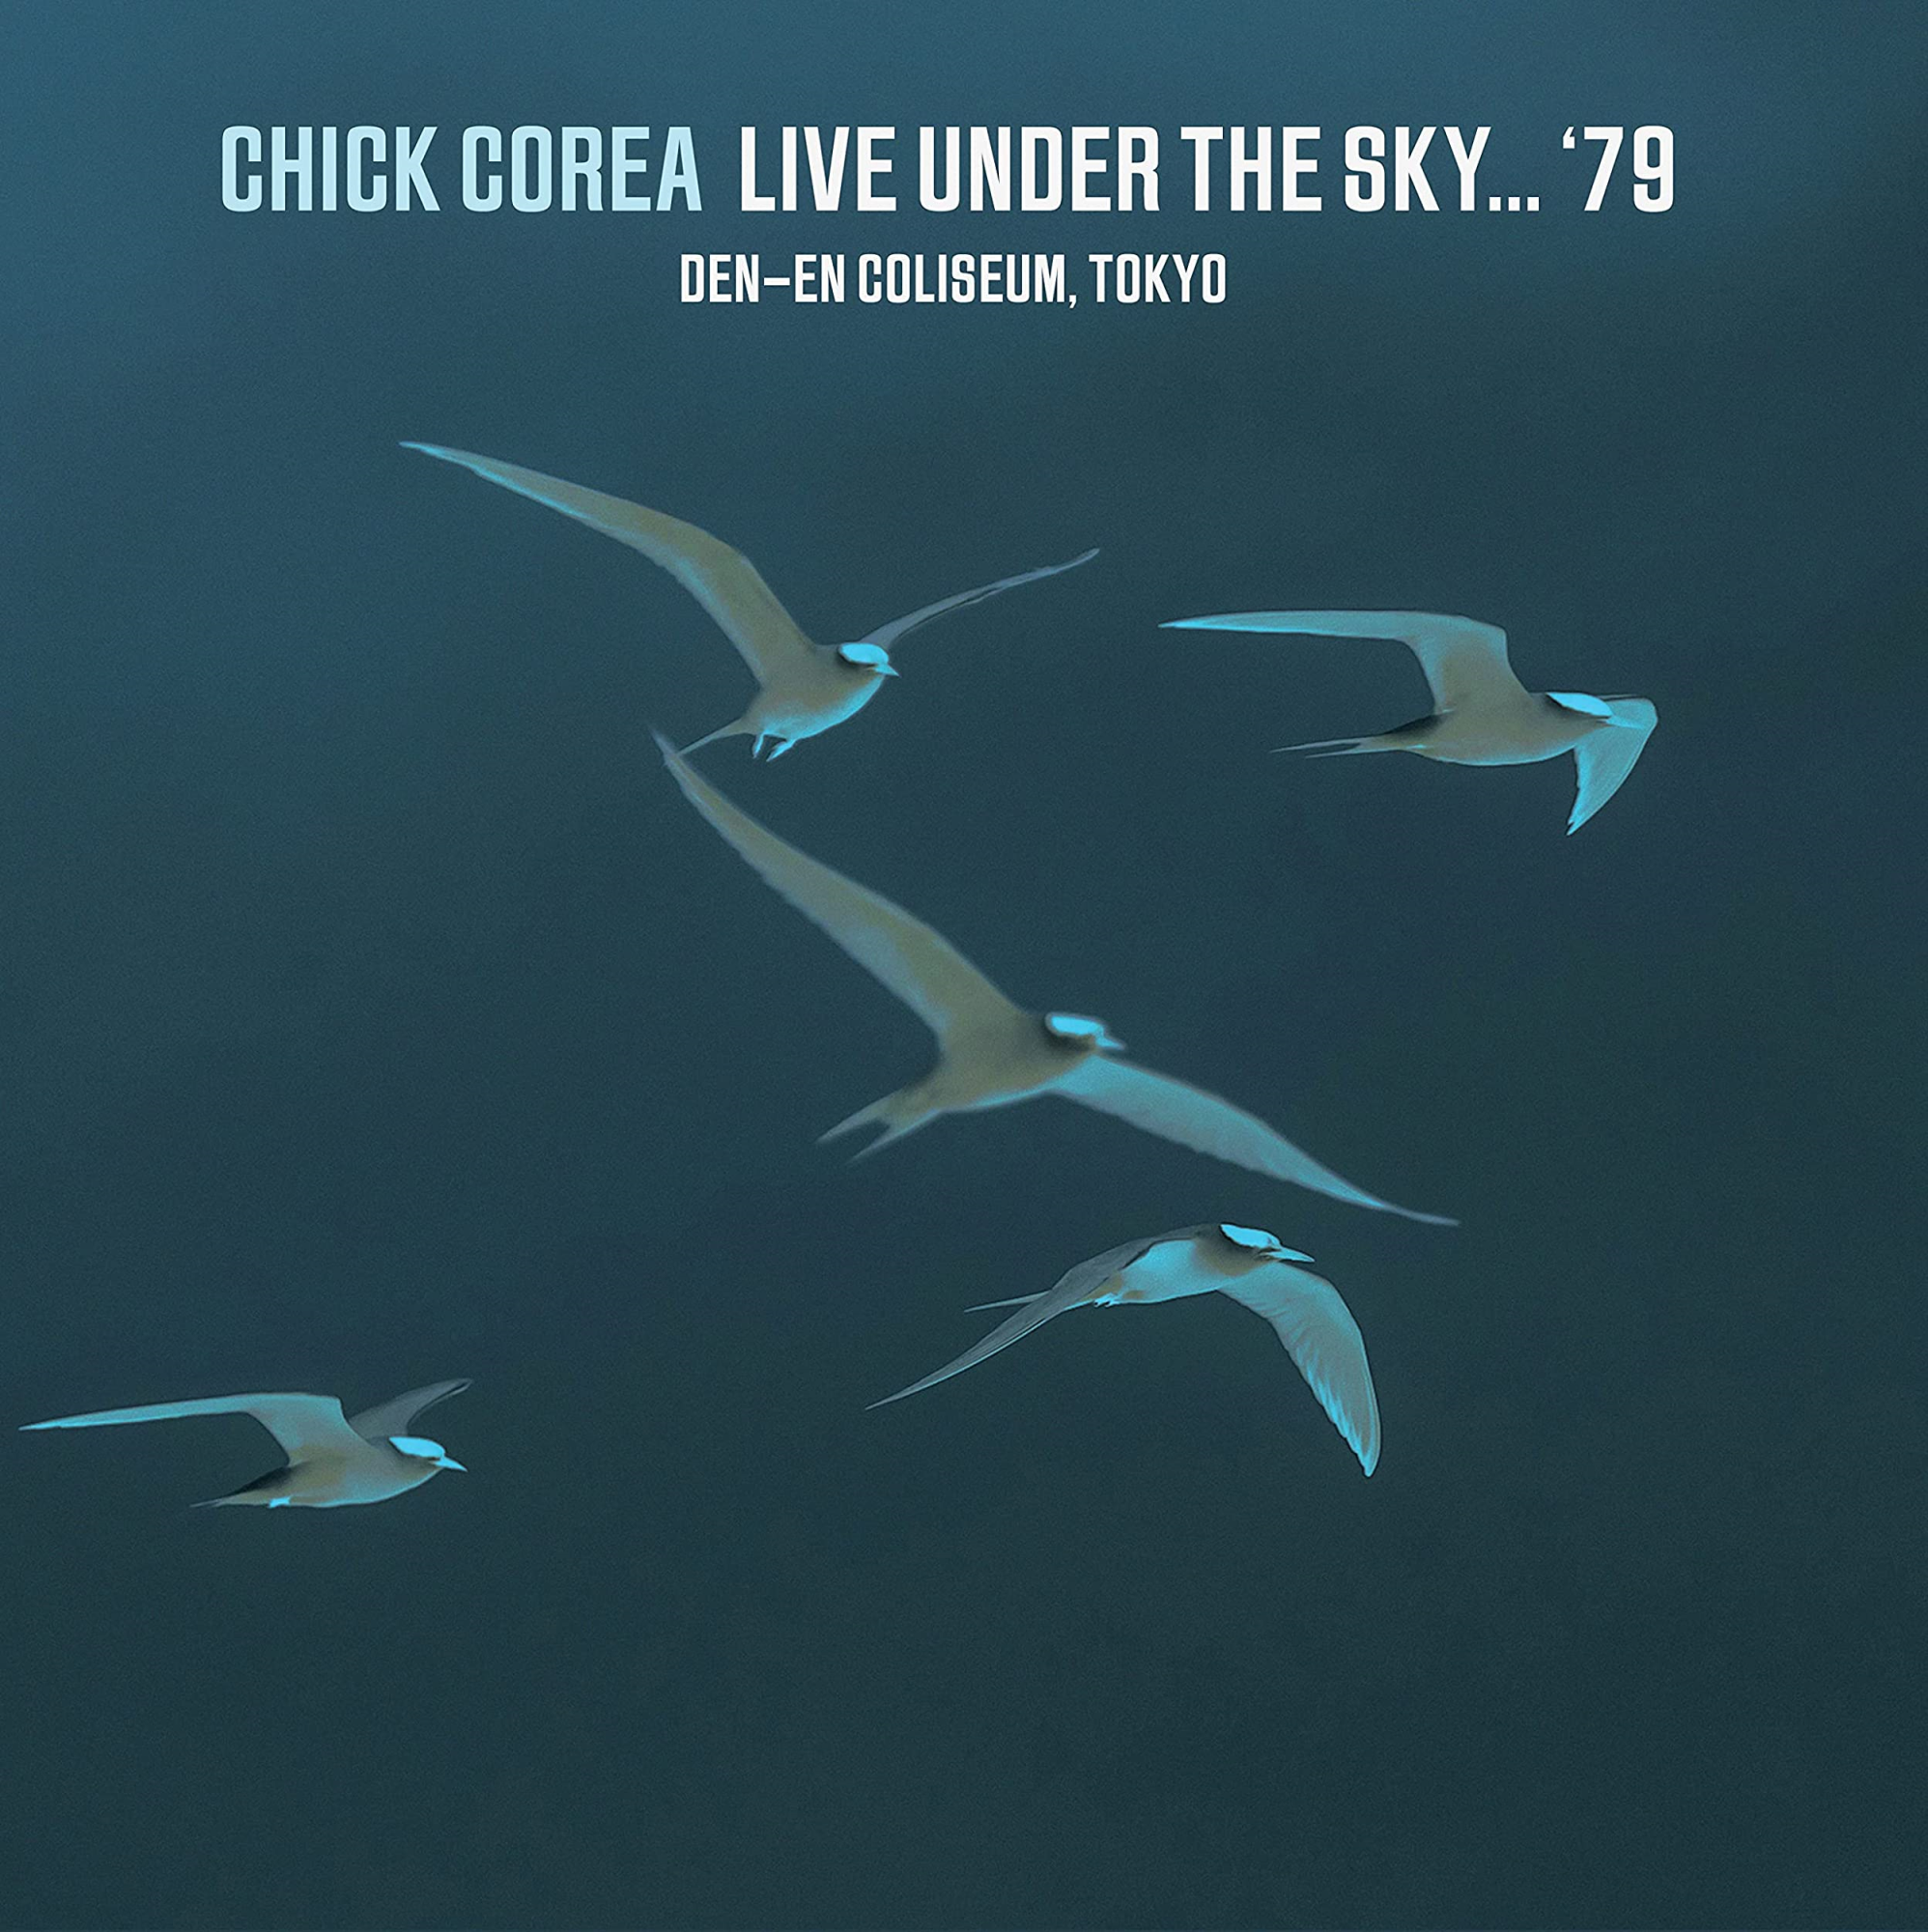 Vinile Chick Corea - Live Under The Sky '79 (Black Vinyl) (2 Lp) NUOVO SIGILLATO, EDIZIONE DEL 20/01/2023 SUBITO DISPONIBILE